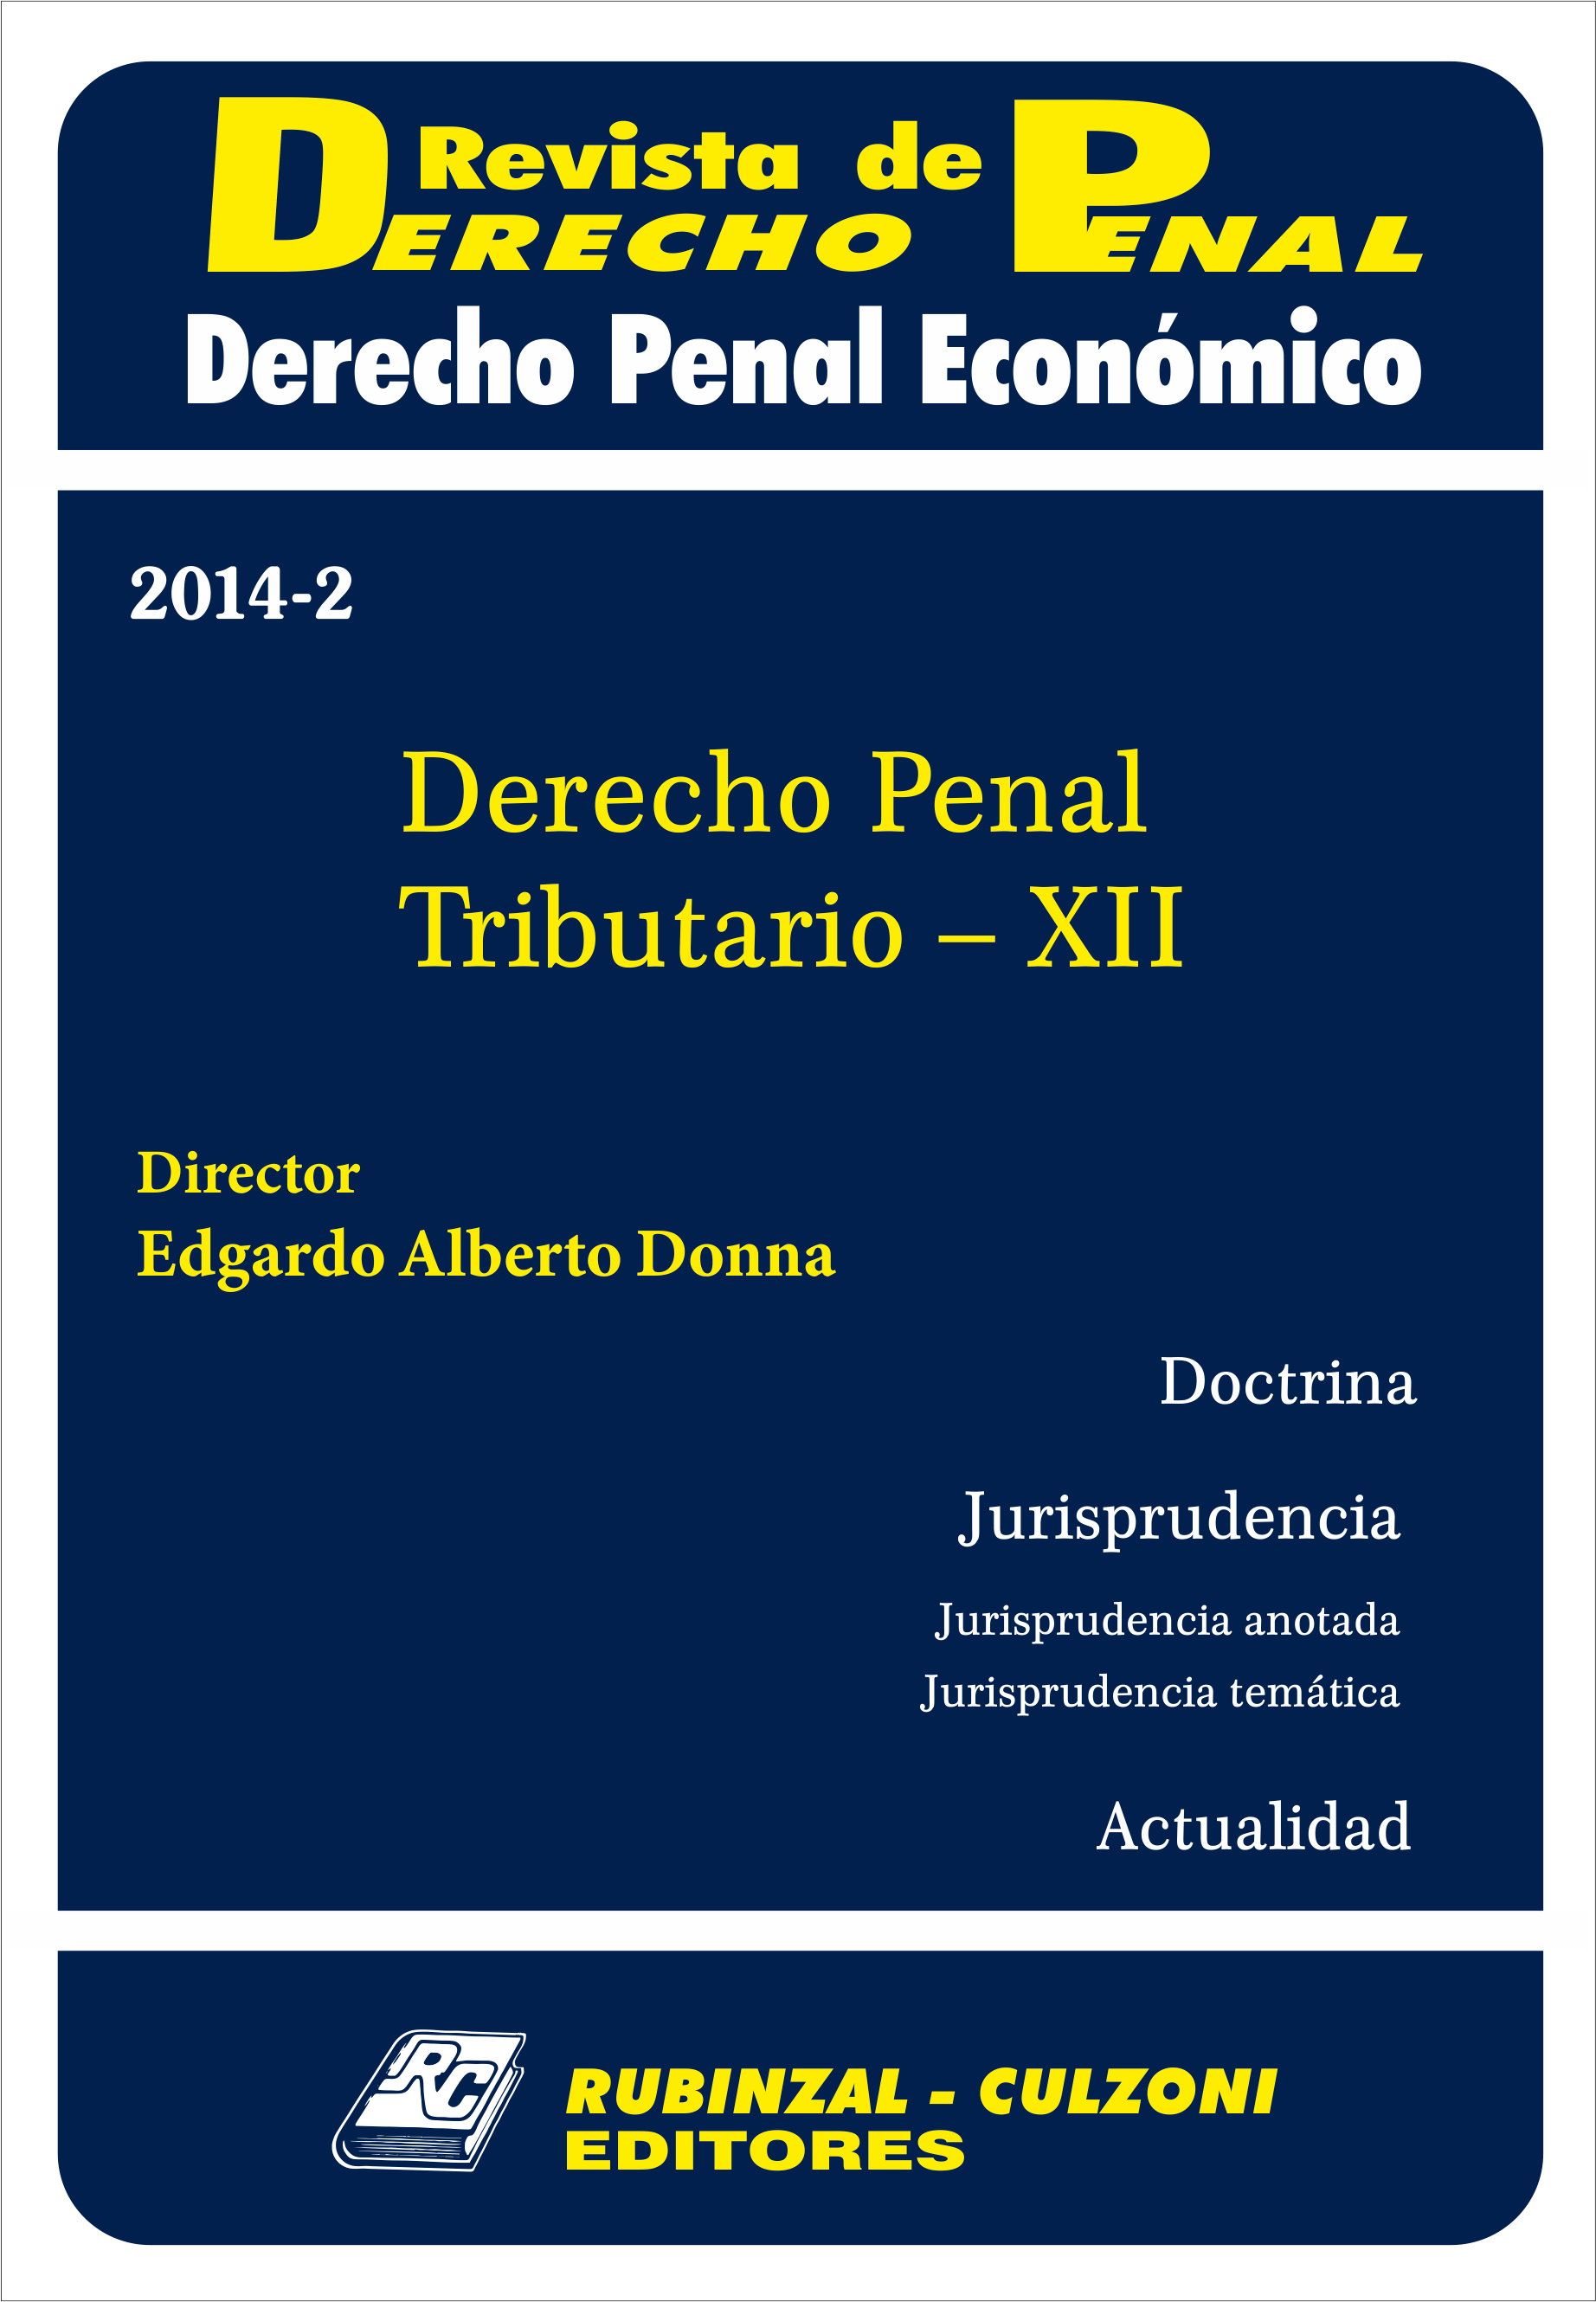 Revista de Derecho Penal Económico - Derecho Penal Tributario - XII